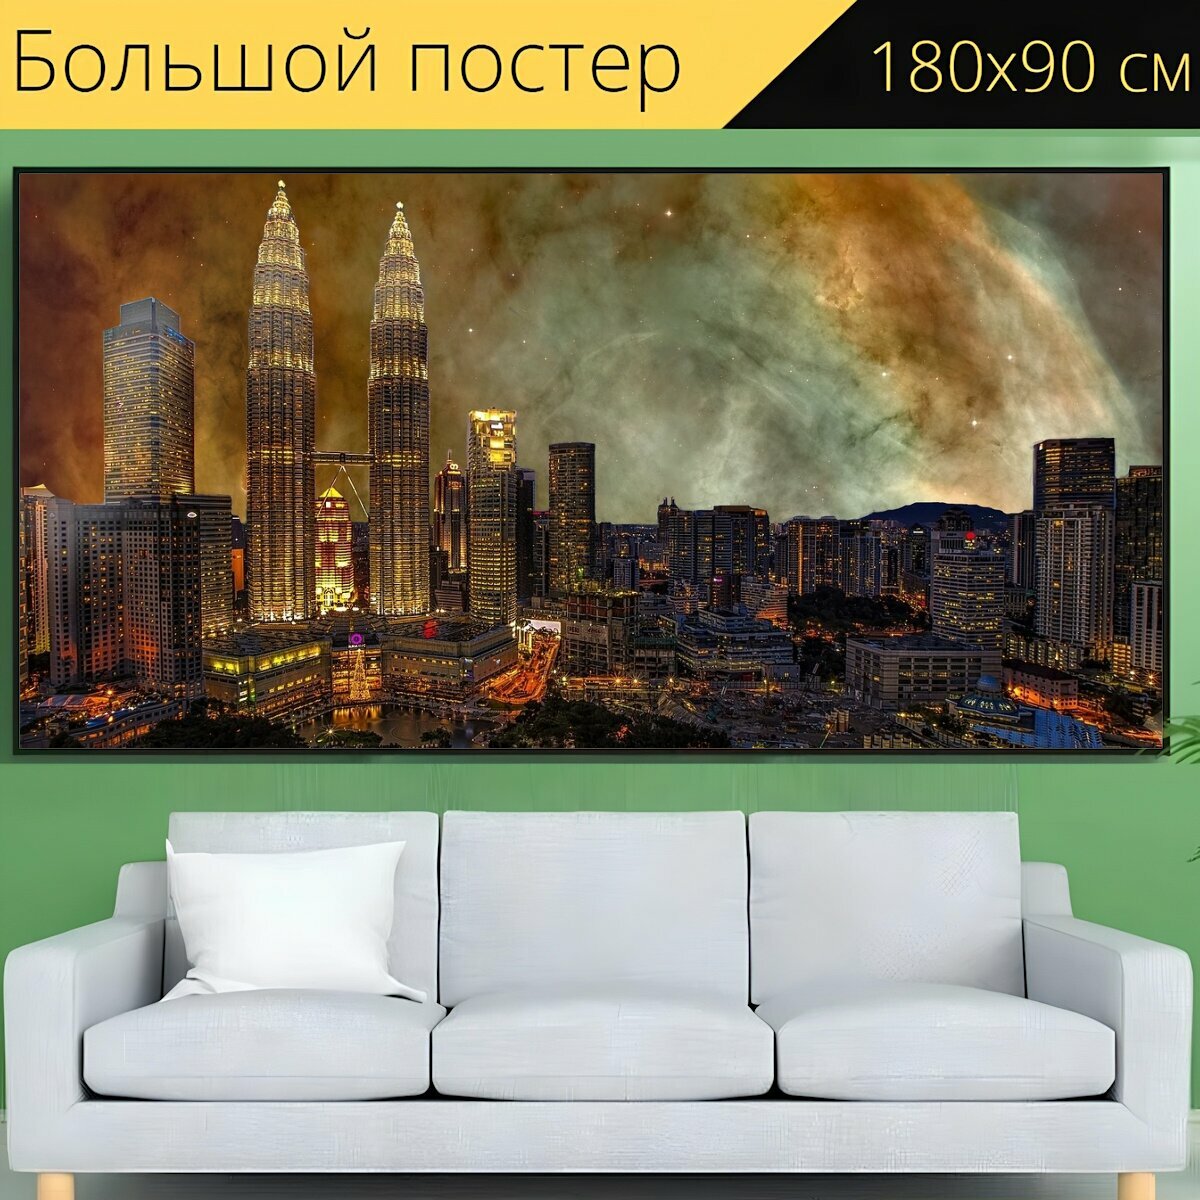 Большой постер "Город, большой город, панорама города" 180 x 90 см. для интерьера